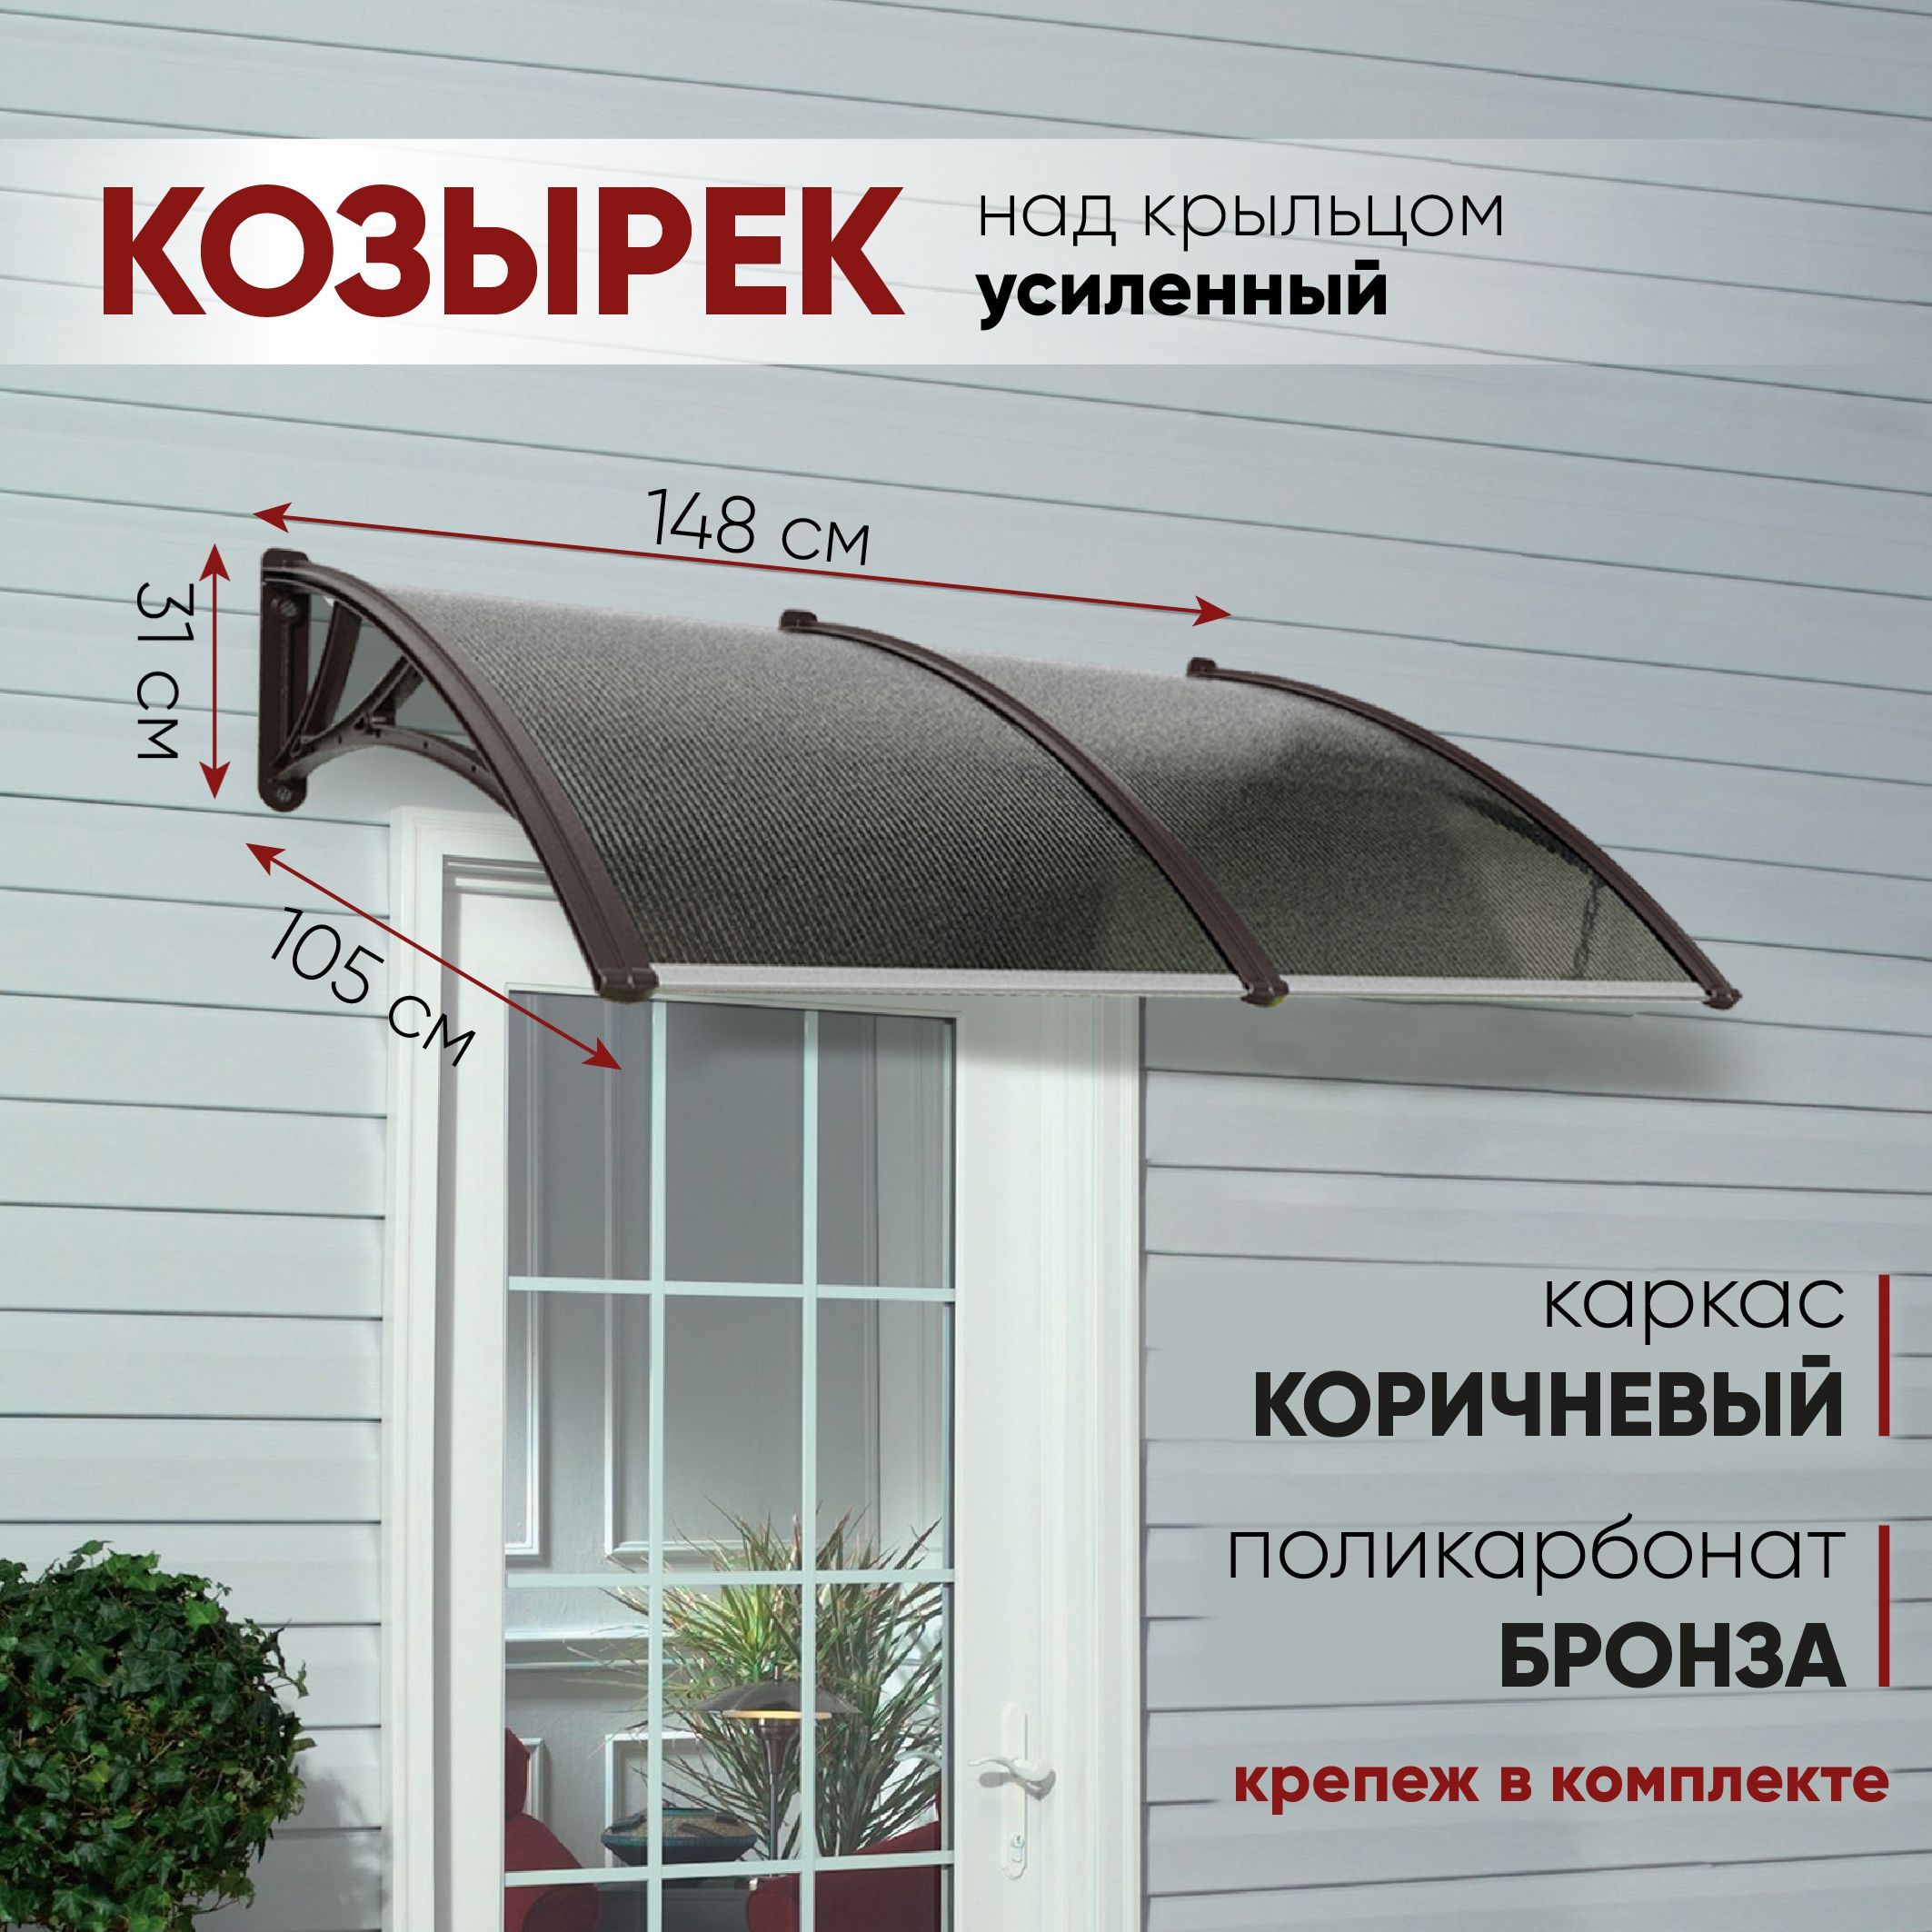 Балконная крыша-козырек из поликарбоната - заказать монтаж в СПб, цены на установку